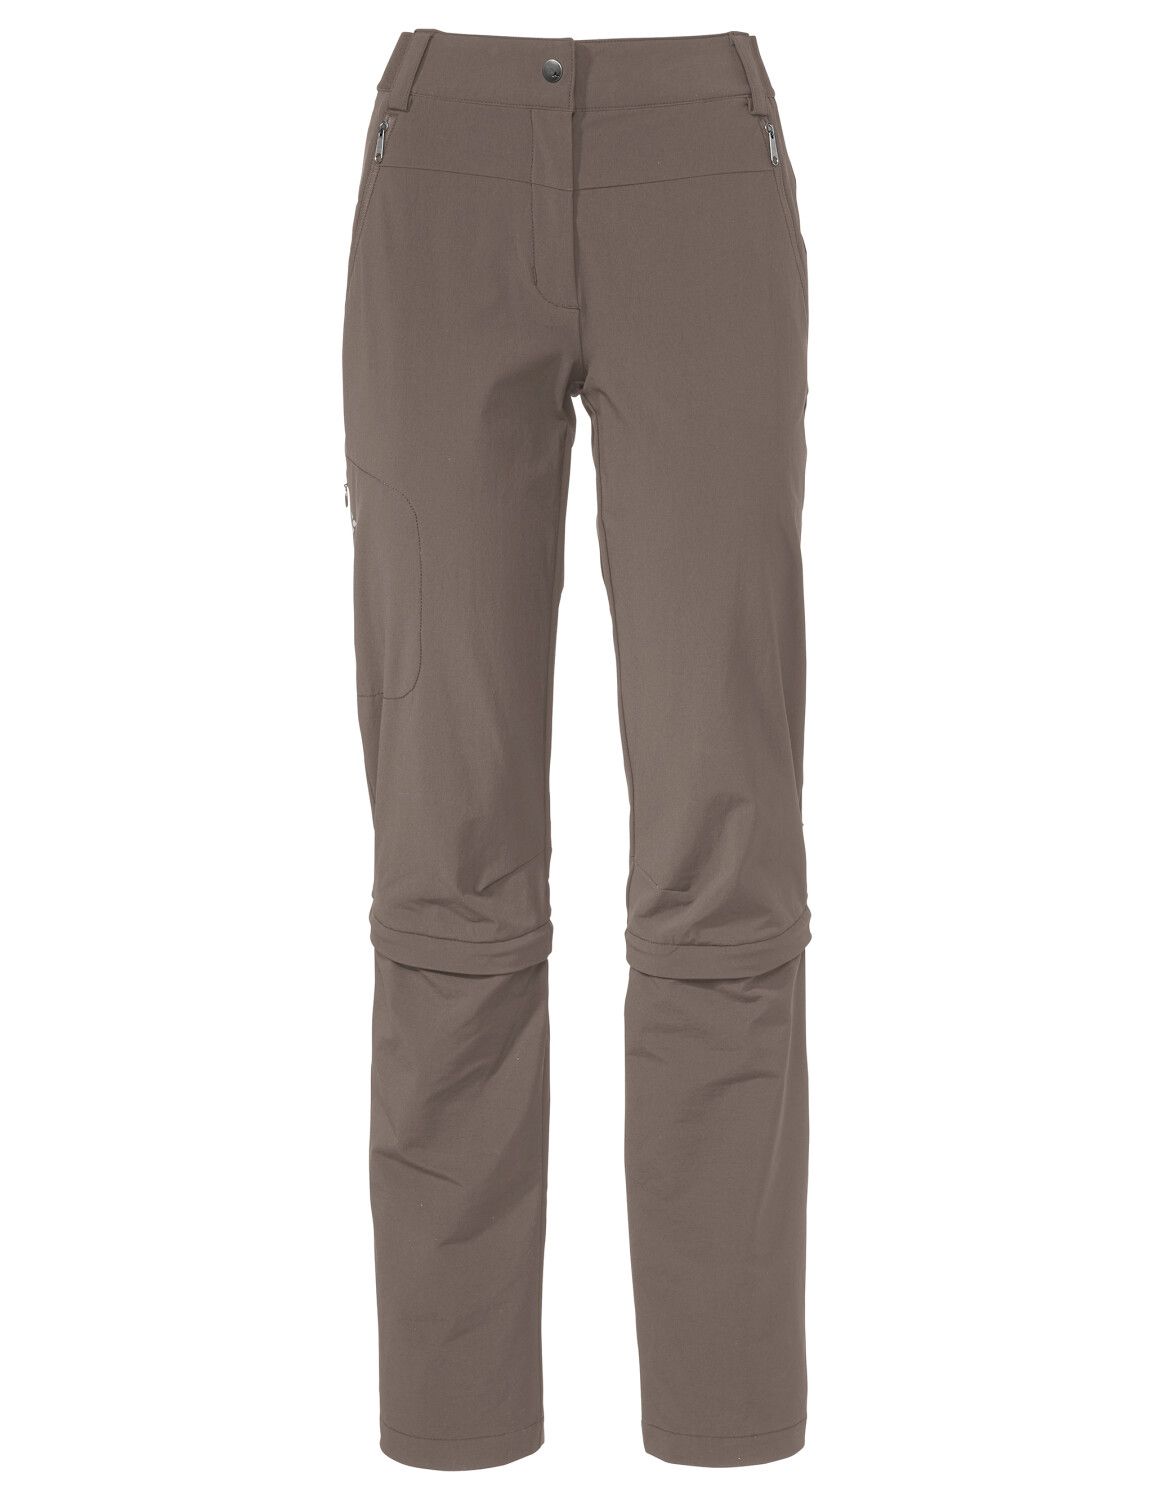 VAUDE Women's Farley Stretch Capri T-Zip Pants III (Bild 67)